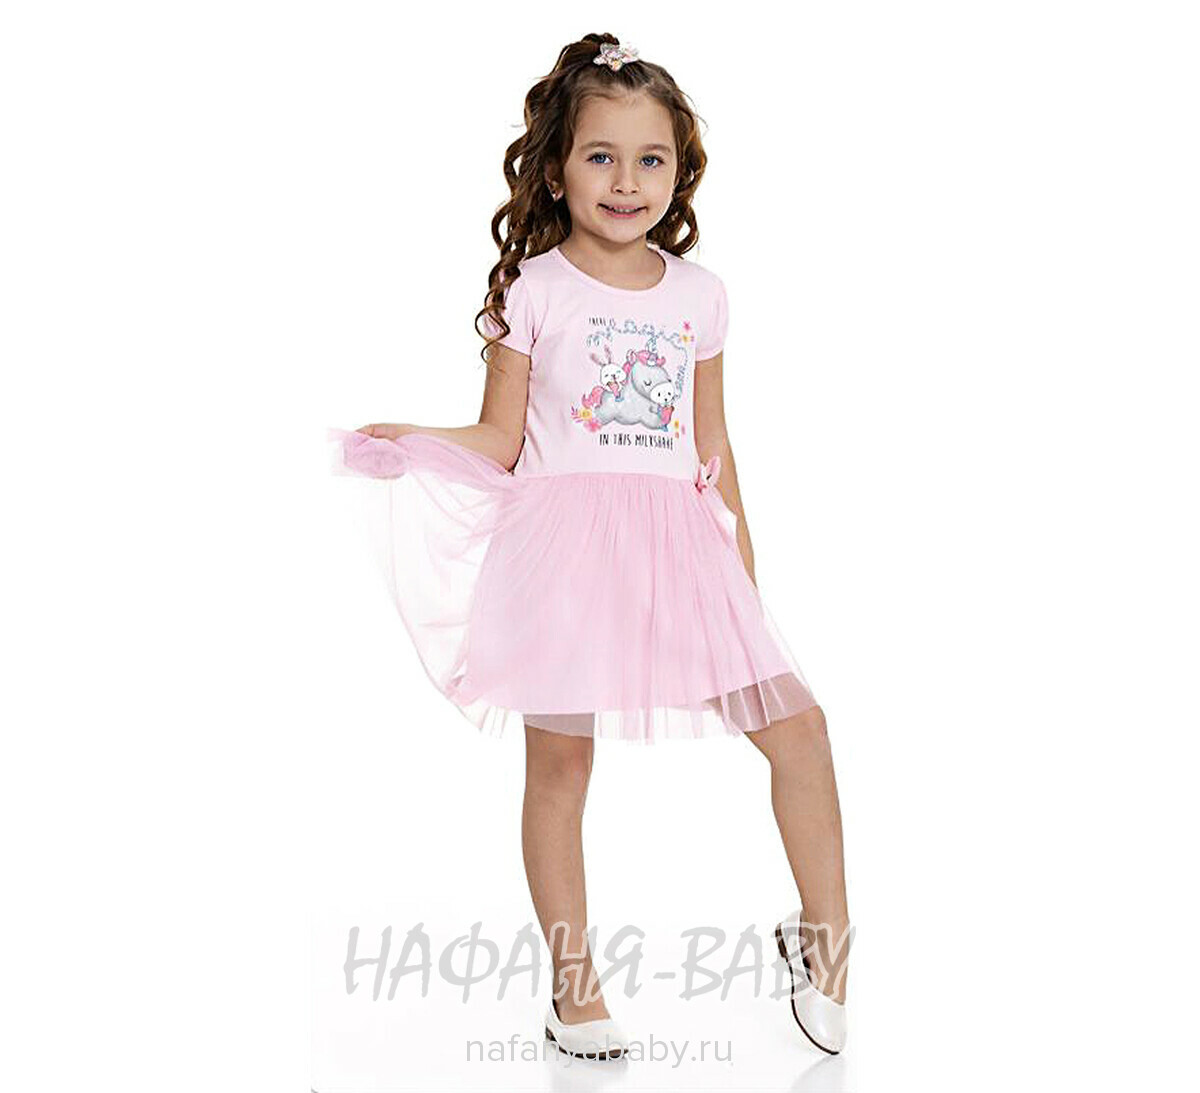 Платье трикотажное PF арт: 6825, 1-4 года, 5-9 лет, цвет розовый, оптом Турция